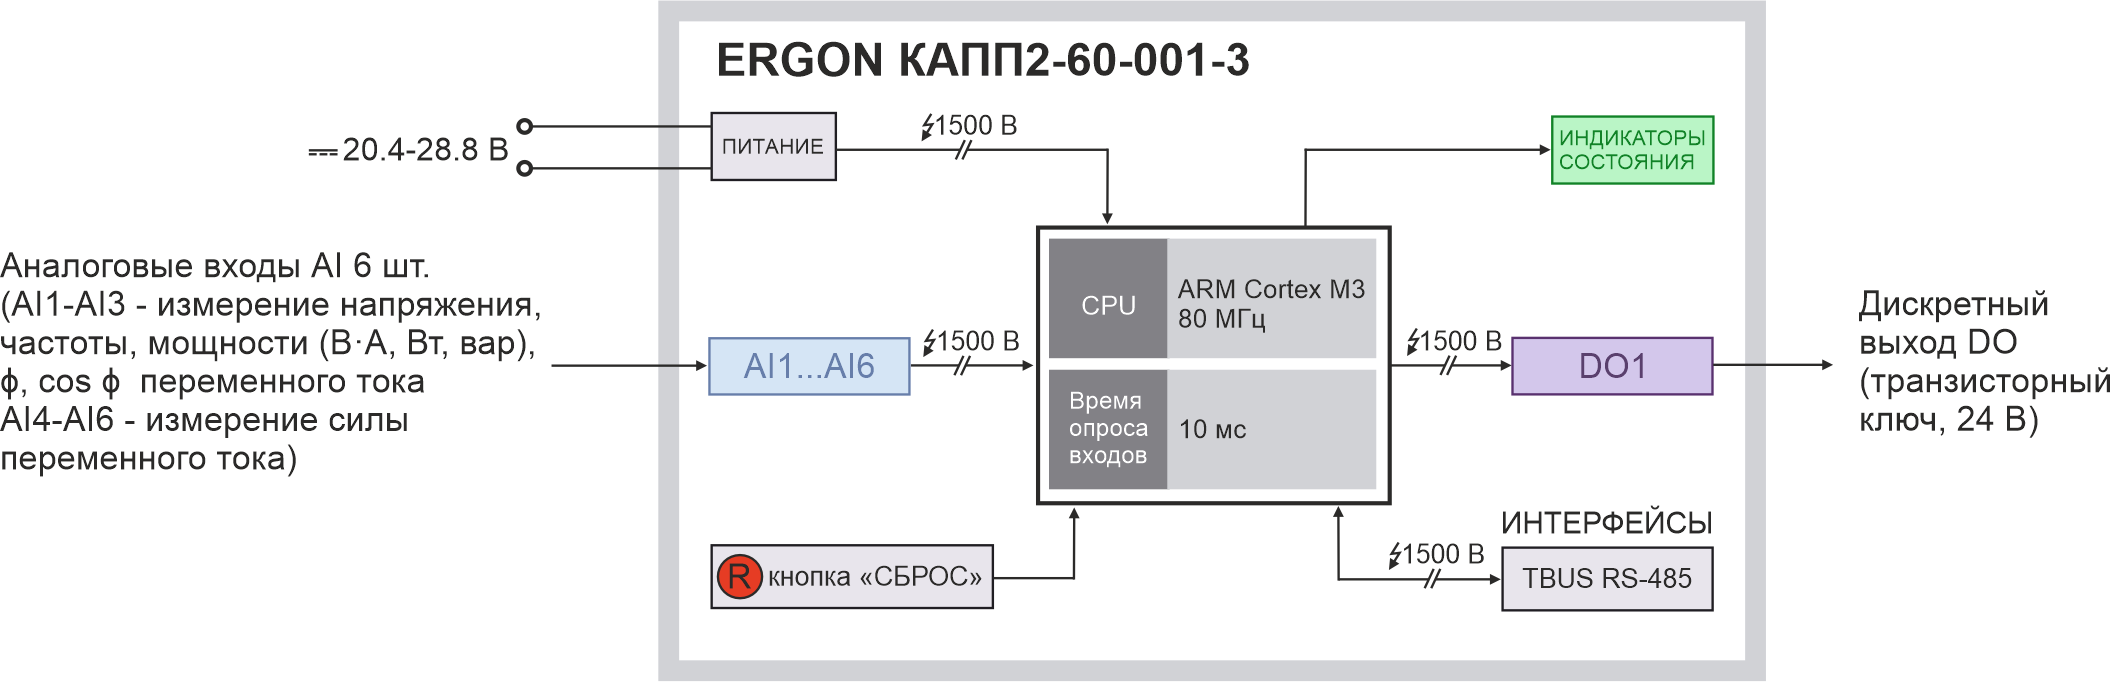 Функциональная схема ERGON КАПП2-60-001-3